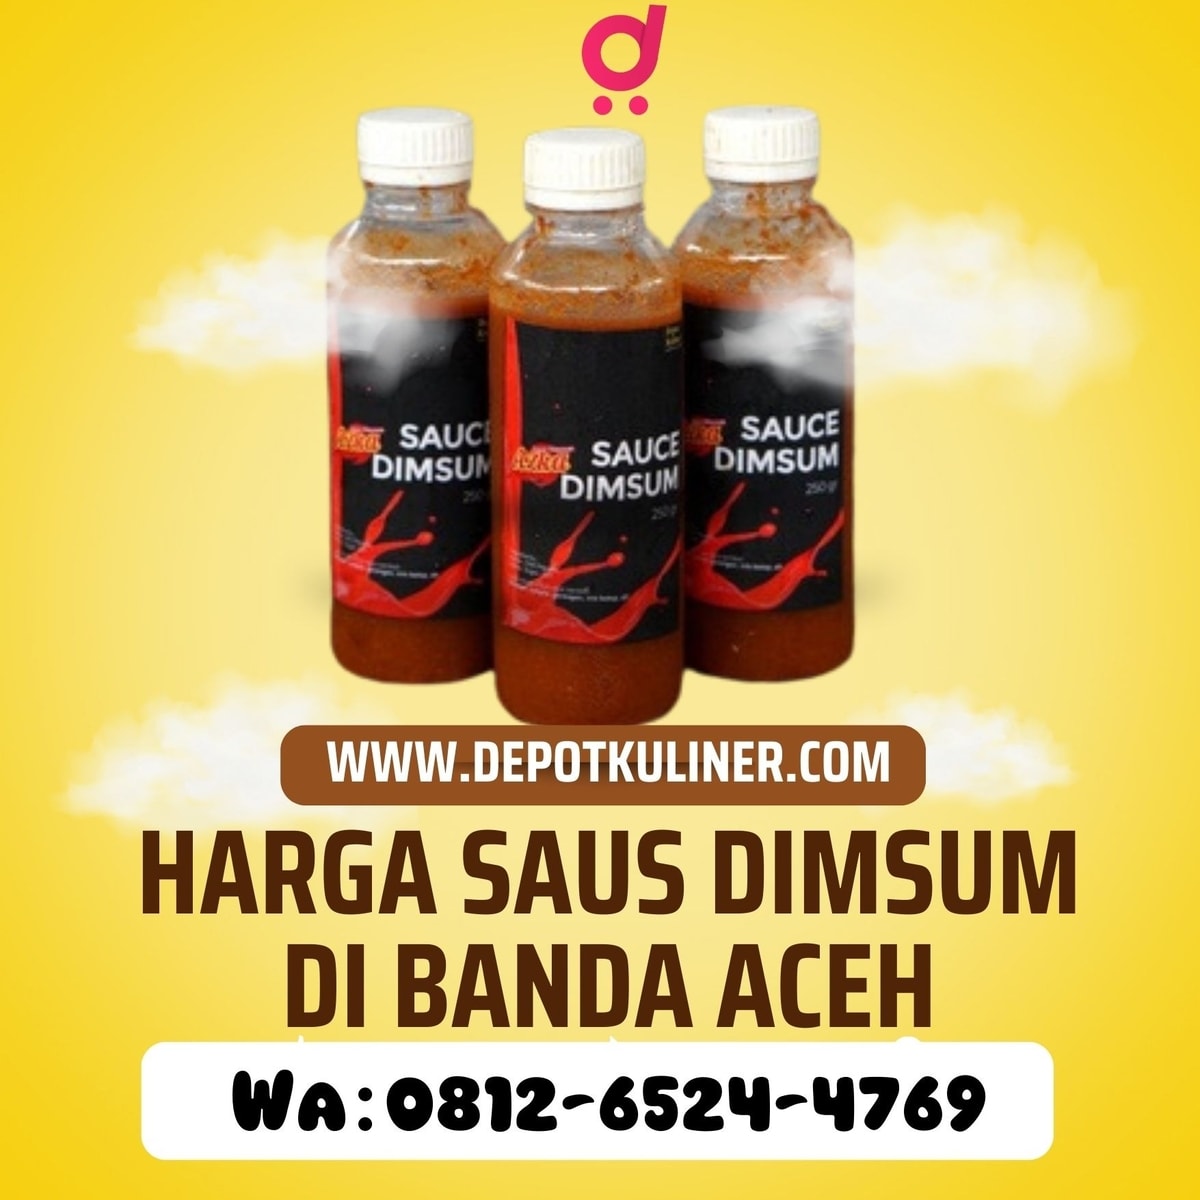 PALING LAKU, Call 0812-6524-4769, Harga Saus Dimsum DI Banda Aceh